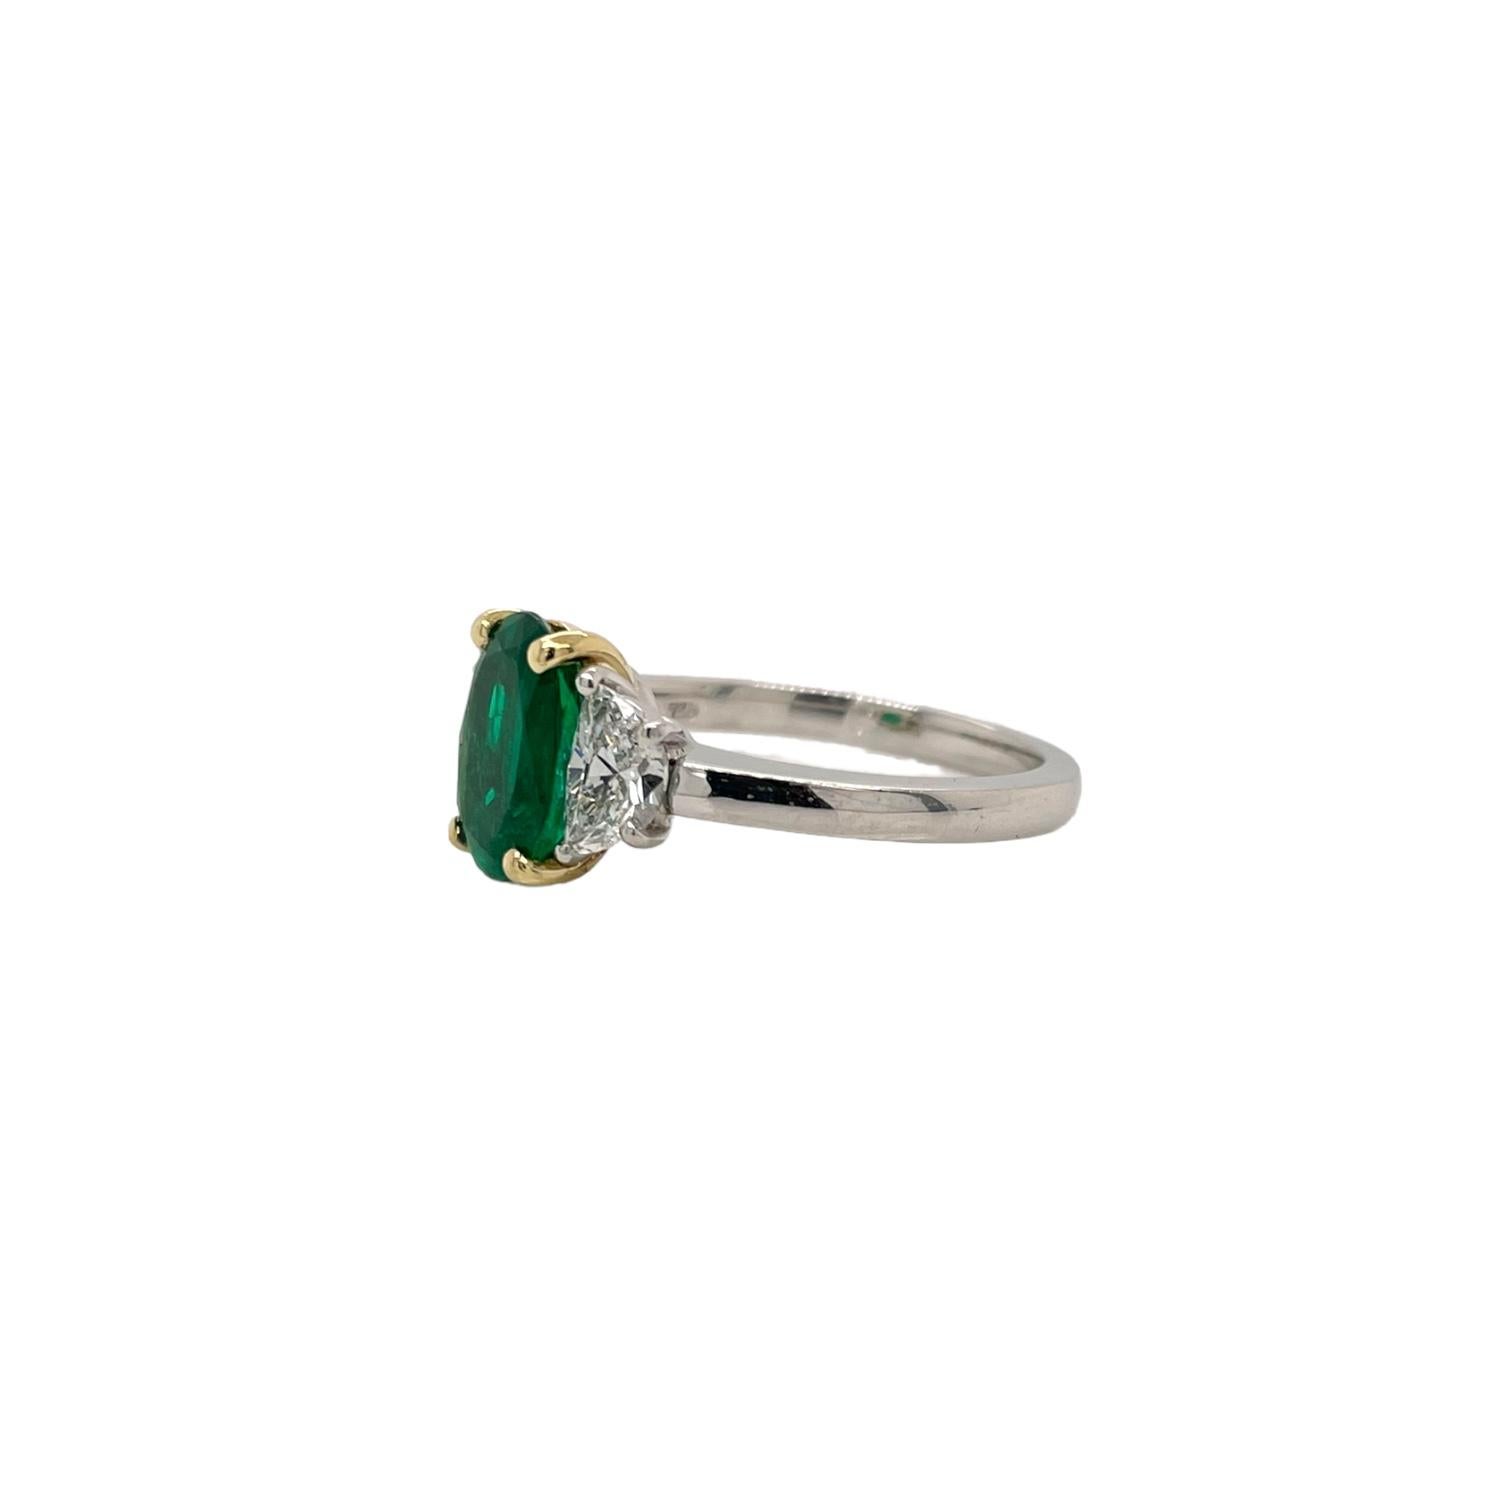 Der Ring enthält einen AGL-zertifizierten kolumbianischen grünen Smaragd von 1,70 ct und zwei seitliche Diamanten im Halbmondschliff von 0,70 tcw.
Die Diamanten haben eine Farbe von G und eine Reinheit von VS2. Die Steine sind in einer